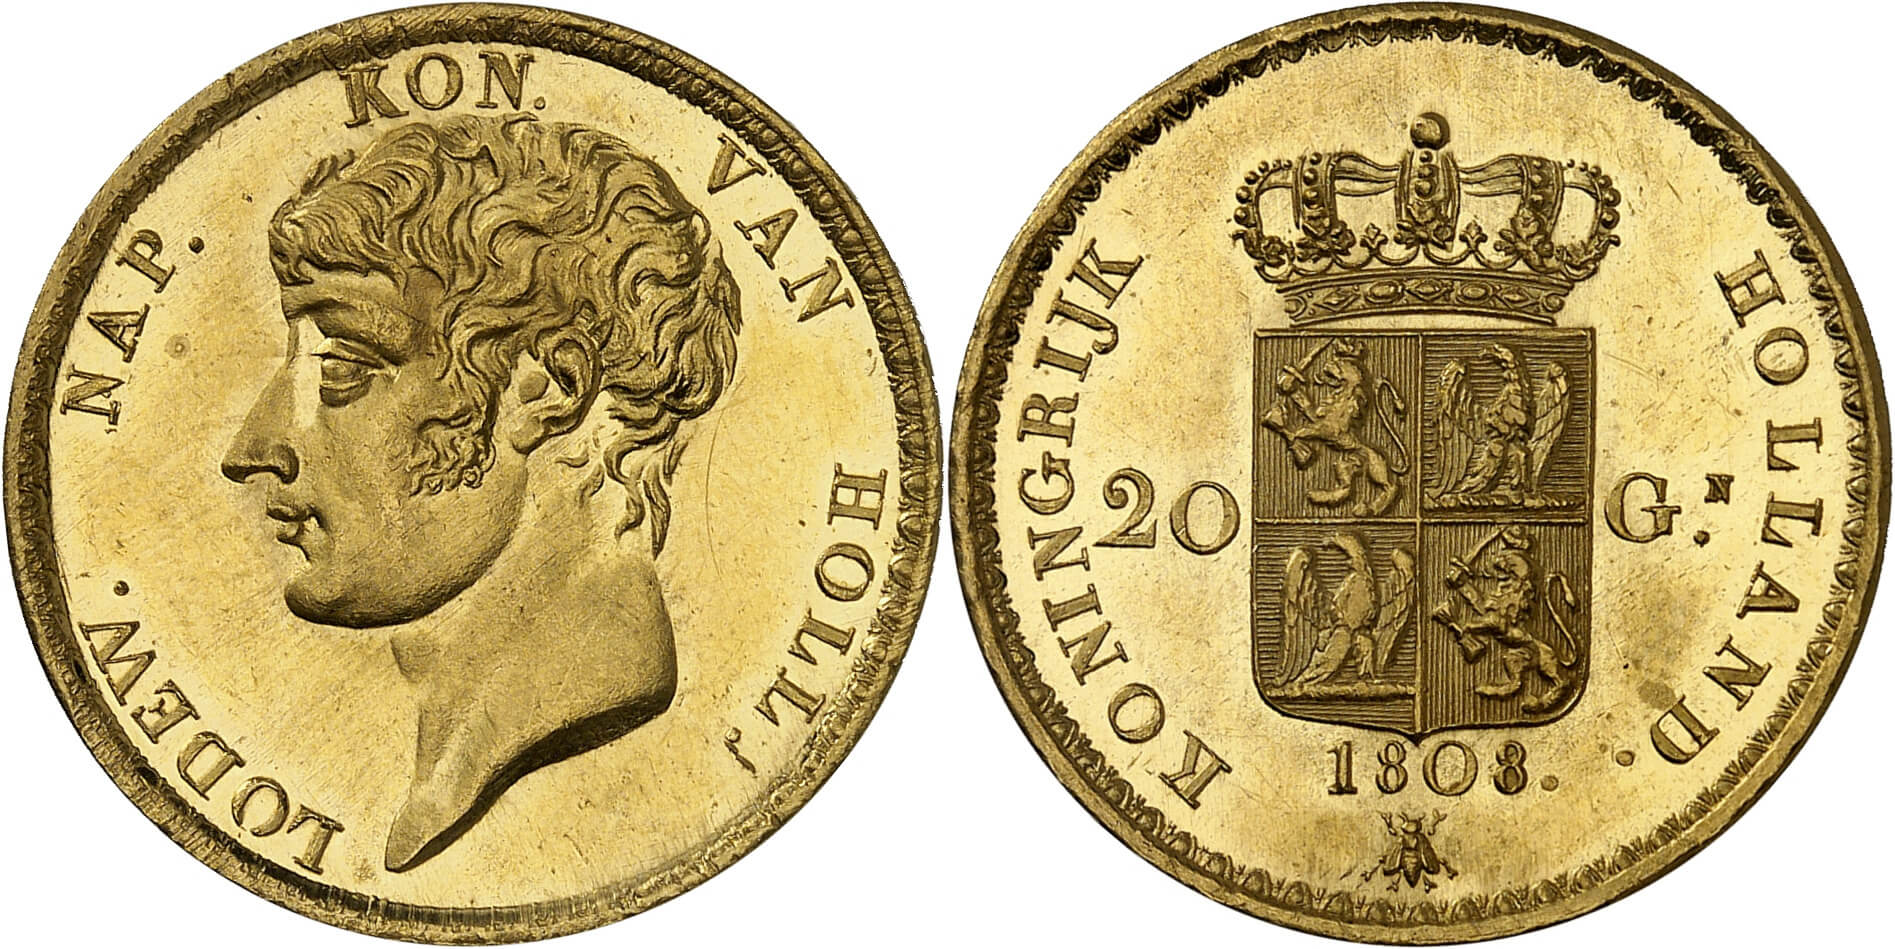 Nr. 3111. Niederlande. Ludwig Napoleon. 20 Gulden 1808, Utrecht. Äußerst selten. Erworben 1992 bei Auktion Coin Investment. Taxe: 40.000 Euro. Zuschlag: 180.000 Euro.